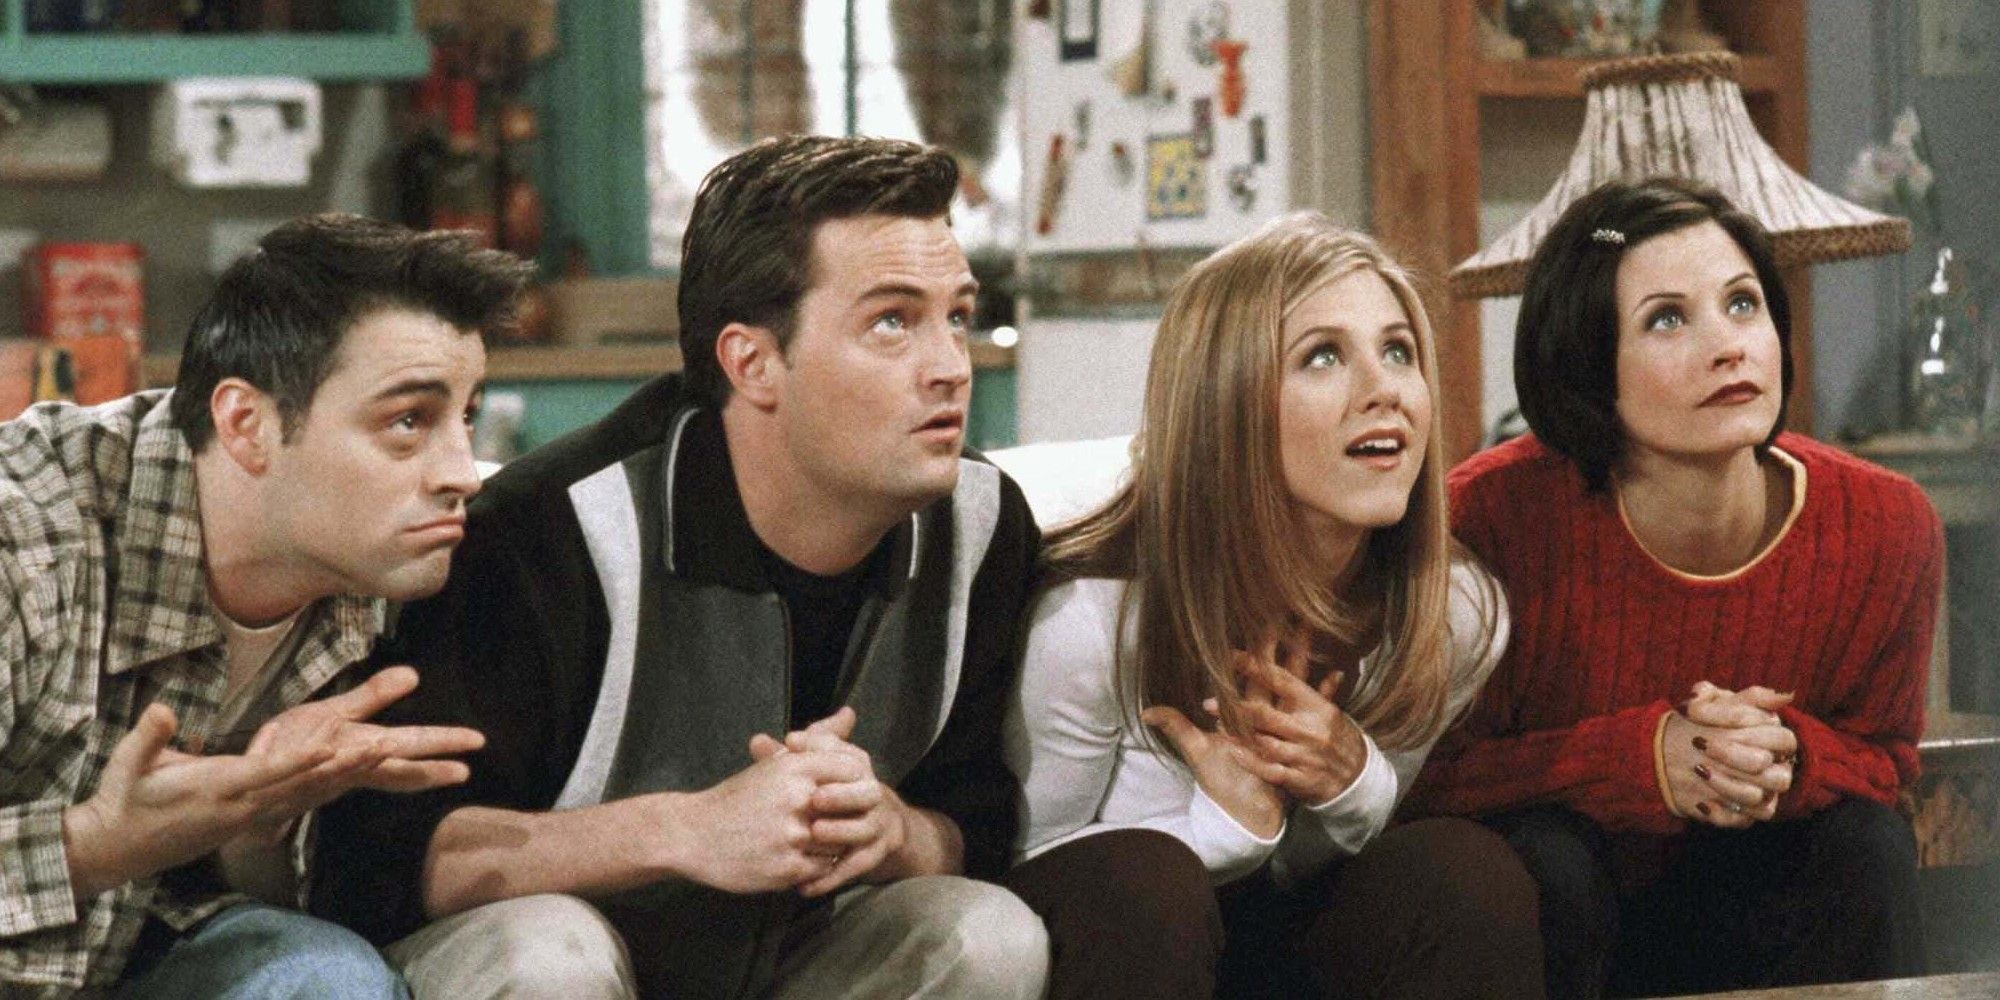 Joey, Chandler, Rachel, and Monica in Friends.